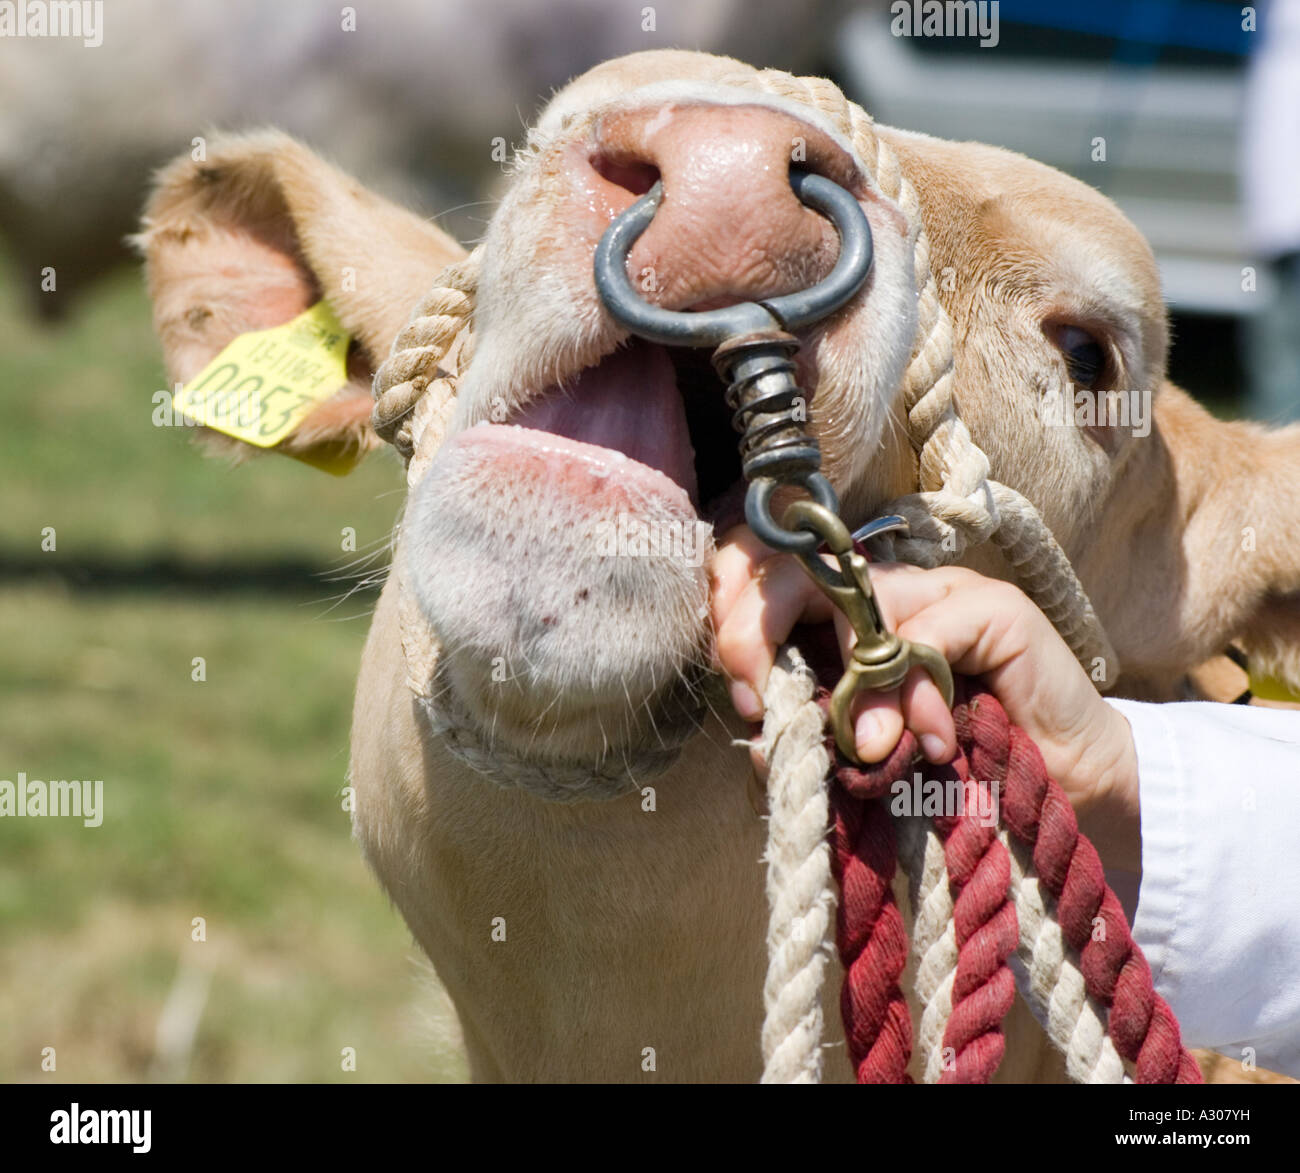 Ragazza con una mucca con un anello attraverso il suo naso Foto stock -  Alamy